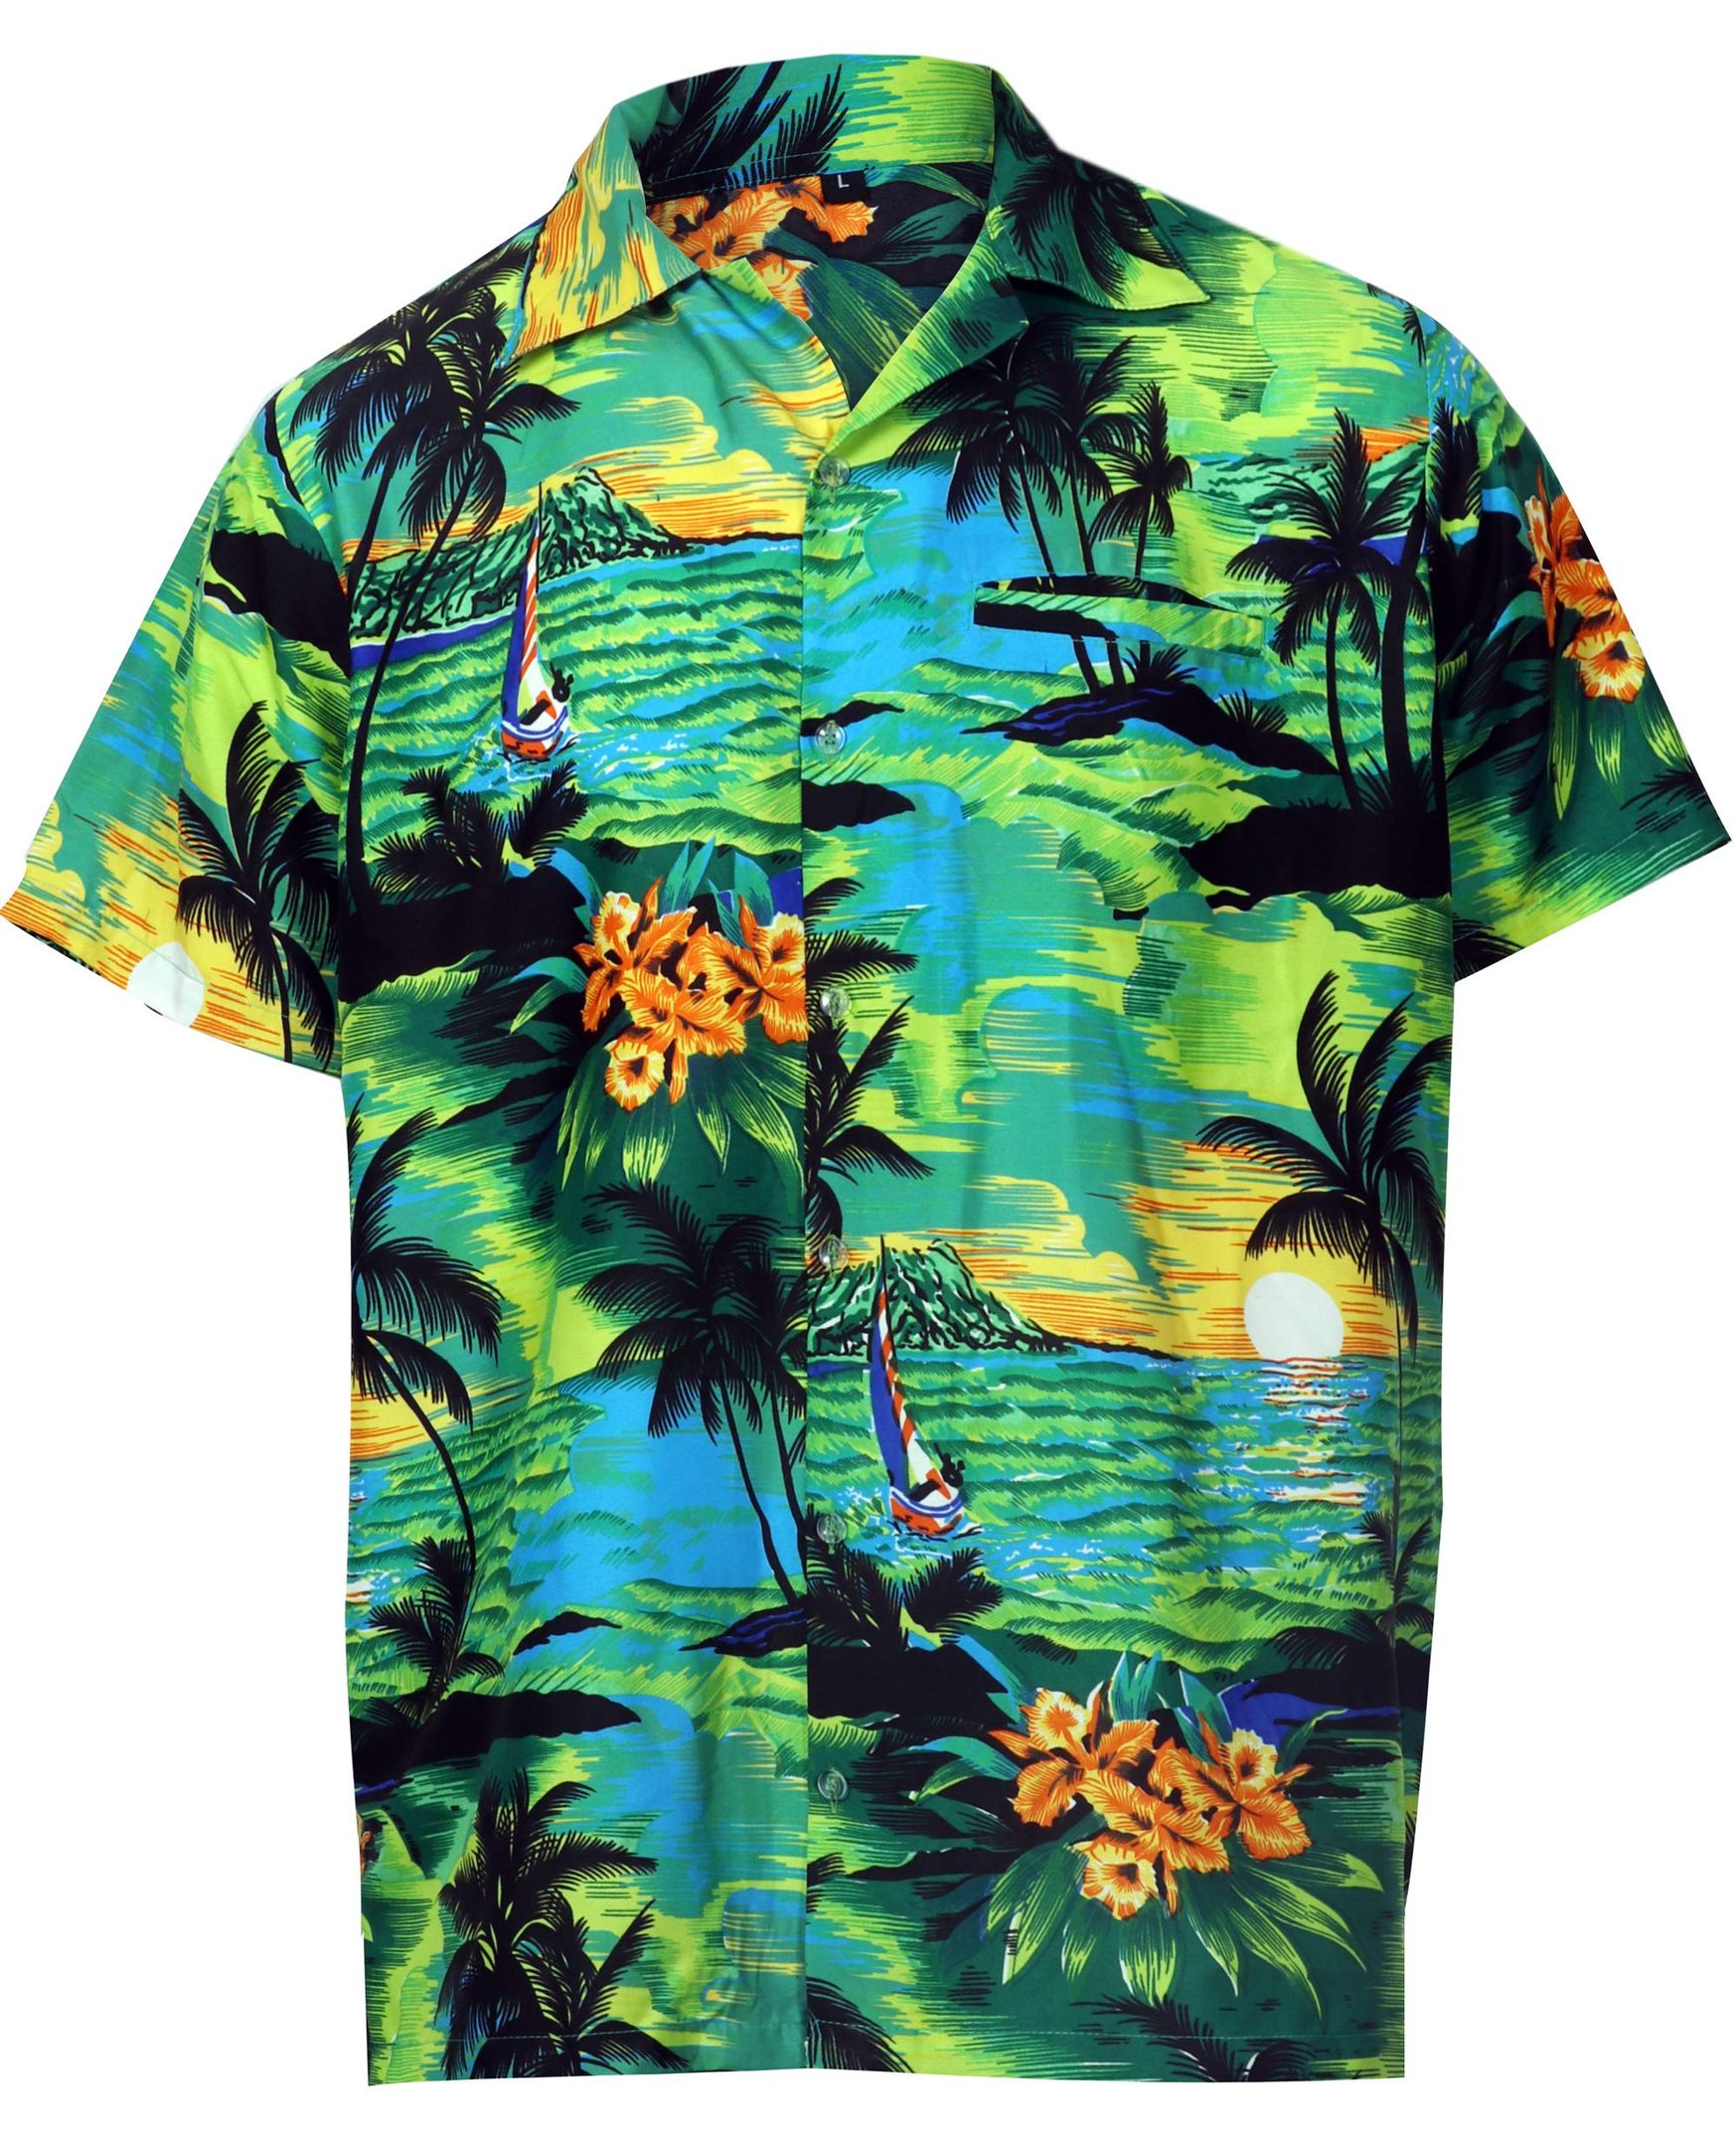 Beach Green Black Best Design Hawaiian Shirt Dhc18062014